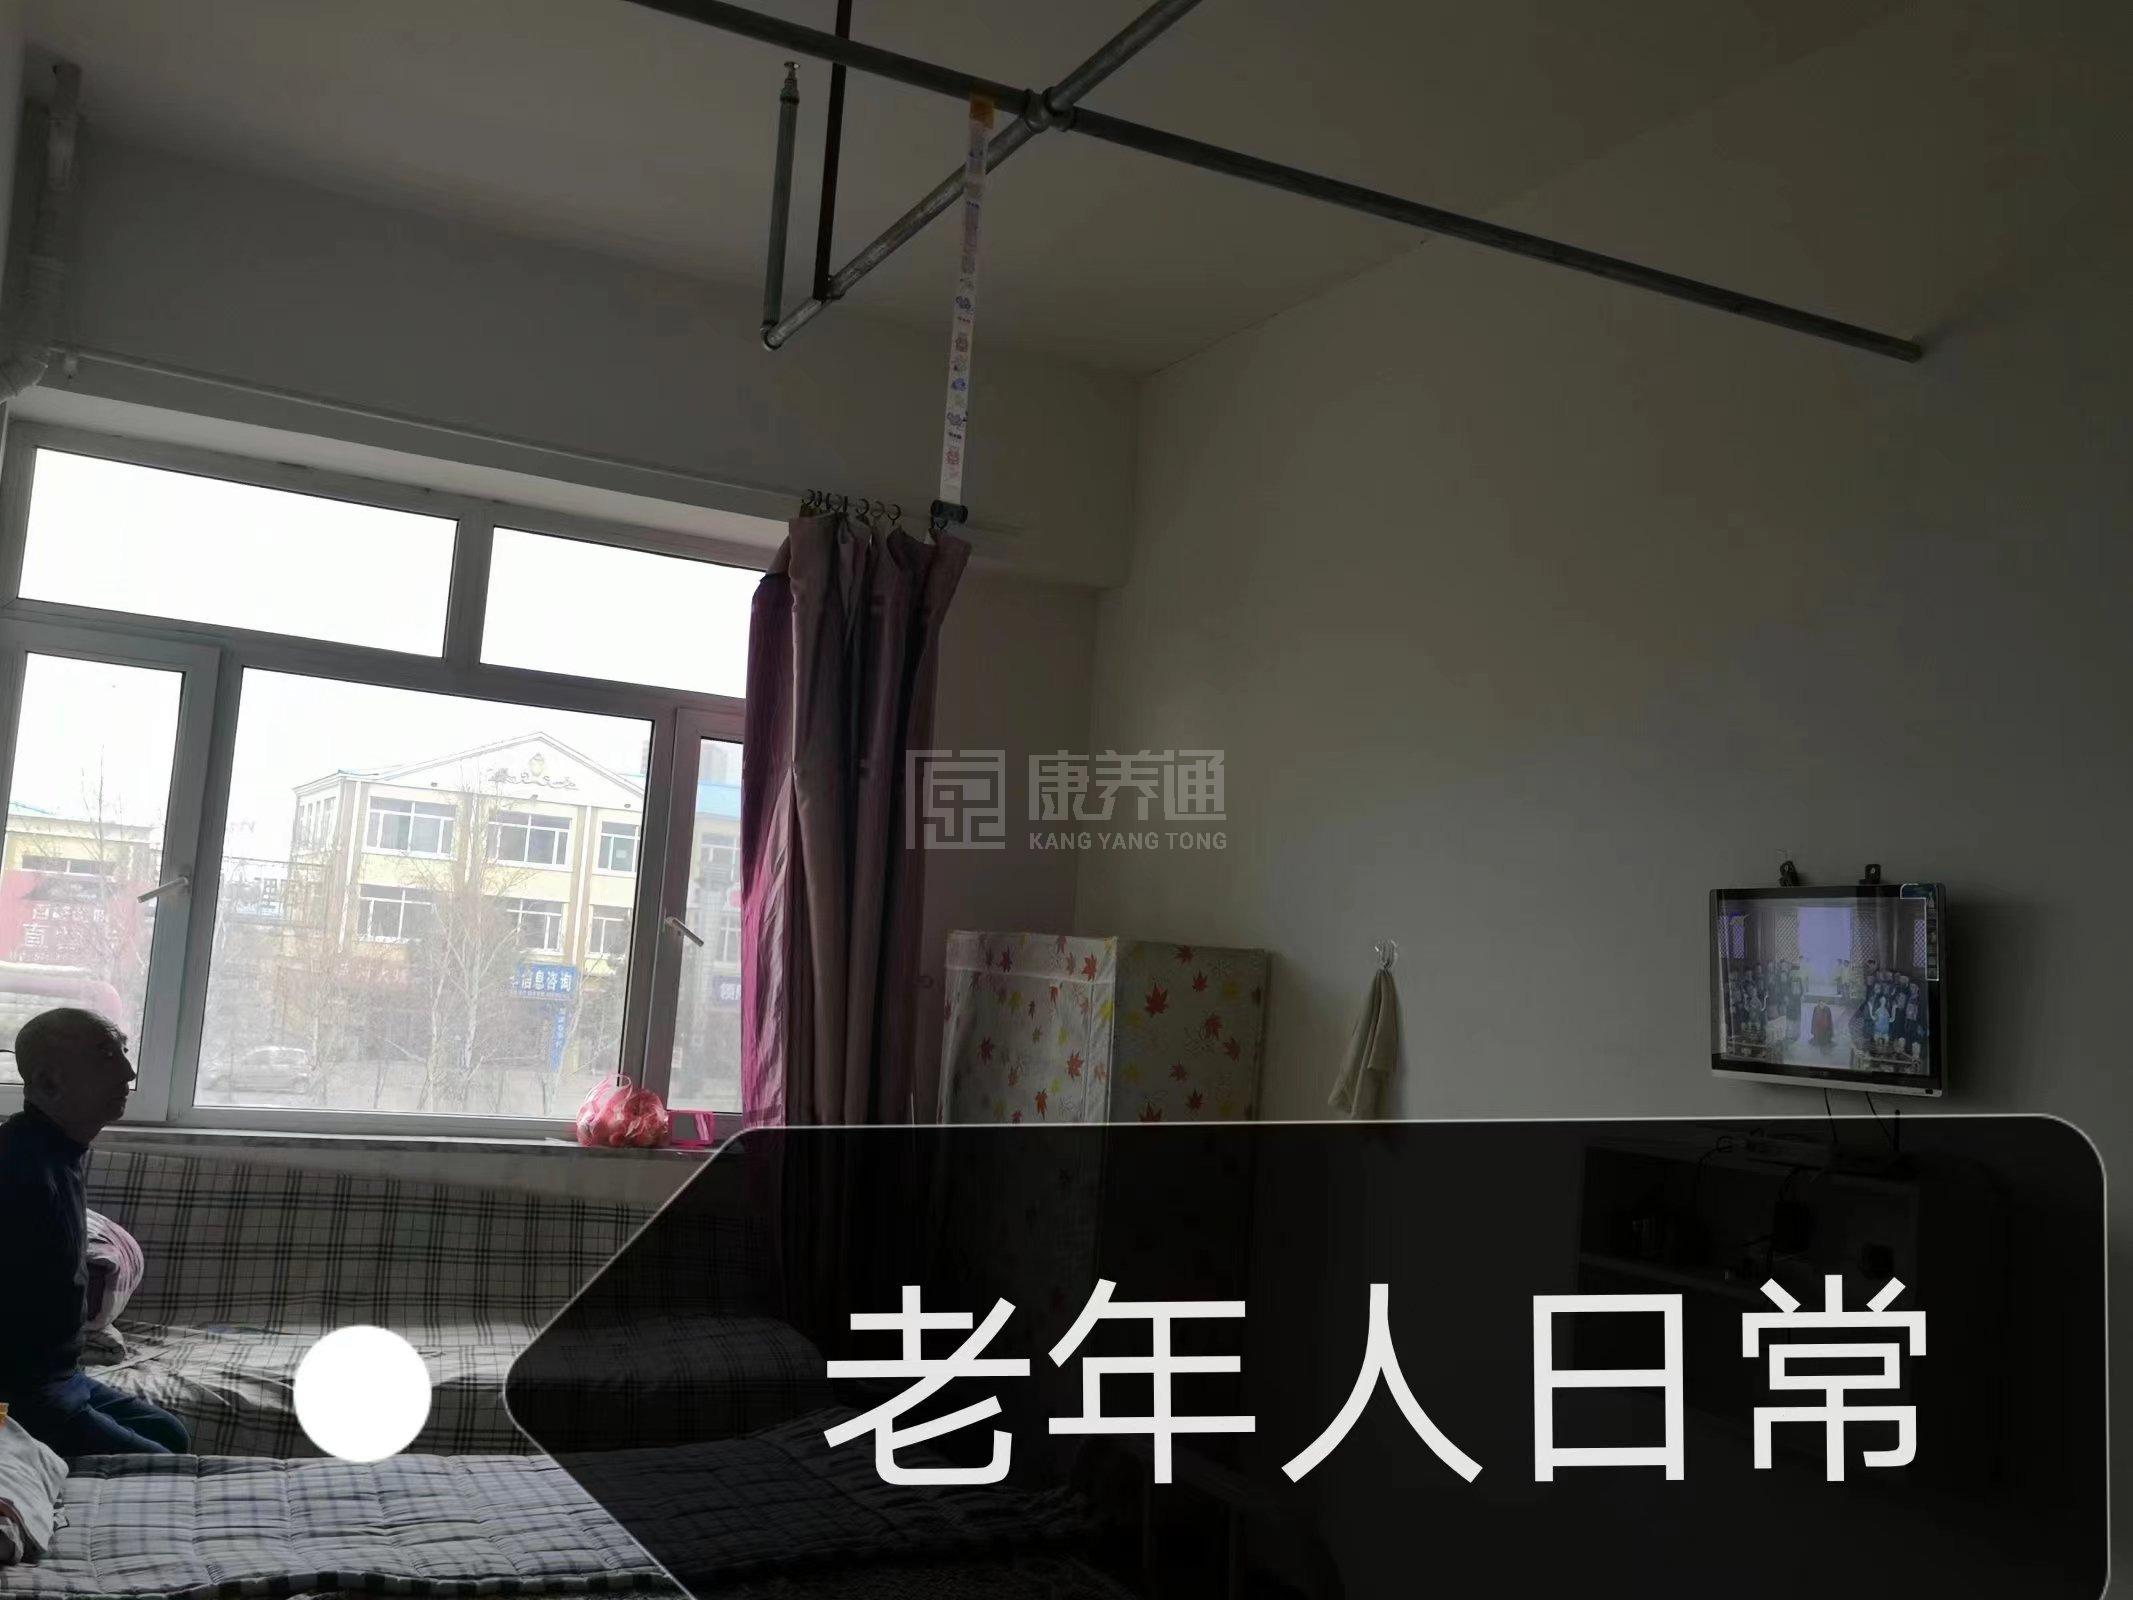 通河县慈爱老年公寓服务项目图3惬意的环境、感受岁月静好